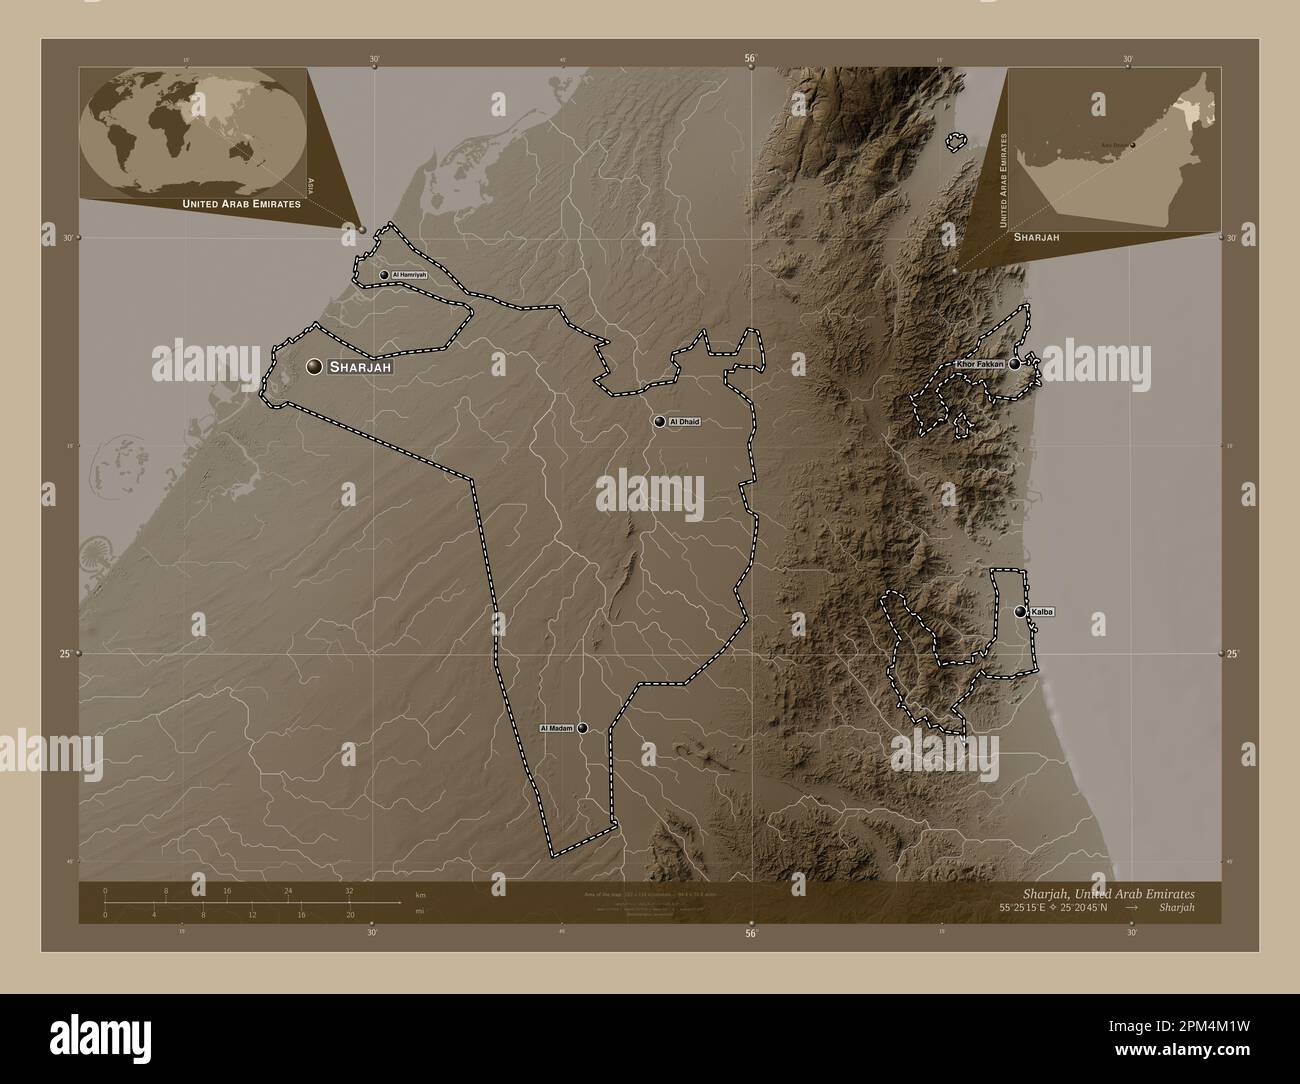 Sharjah, emirato degli Emirati Arabi Uniti. Mappa dell'altitudine colorata in tonalità seppia con laghi e fiumi. Località e nomi delle principali città della regione Foto Stock